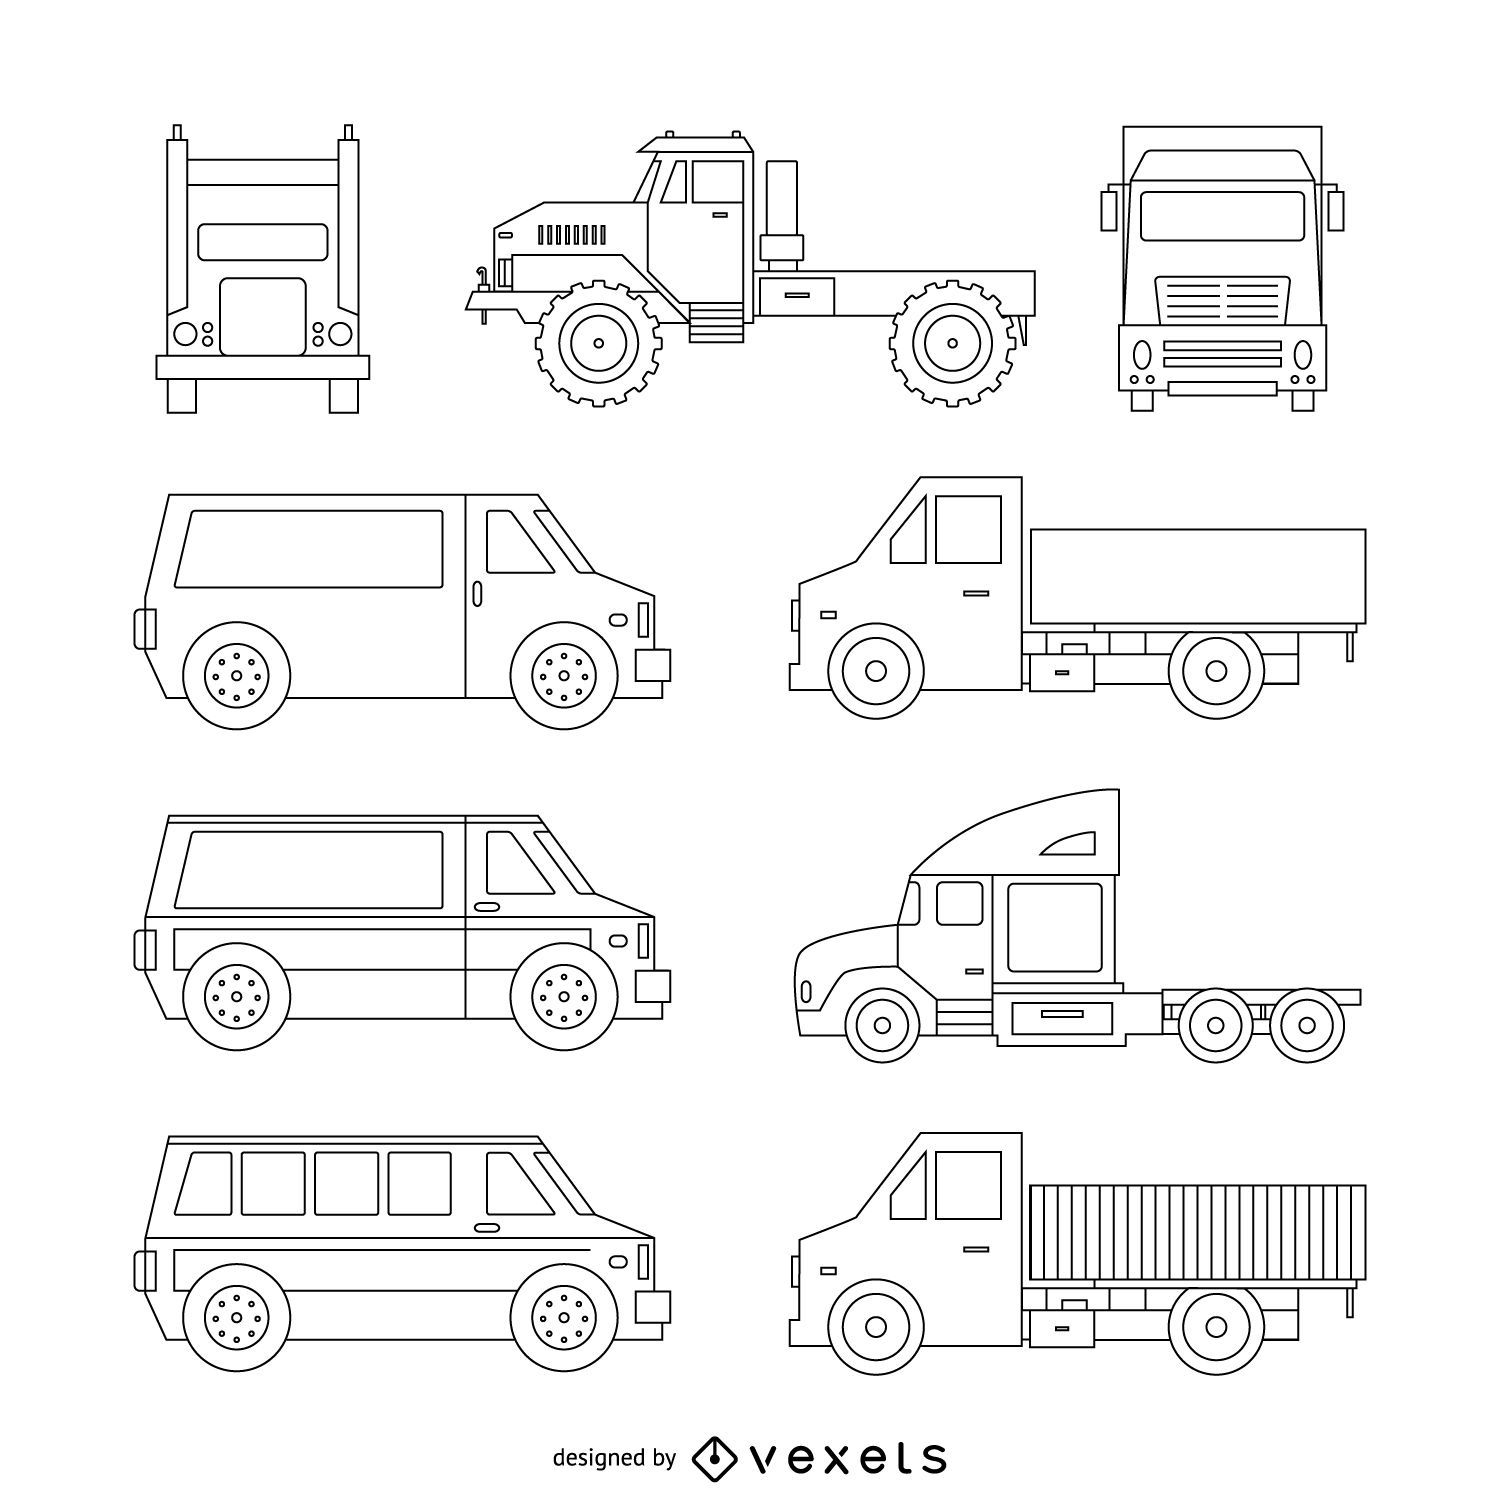 Colecci?n de ilustraciones de camiones